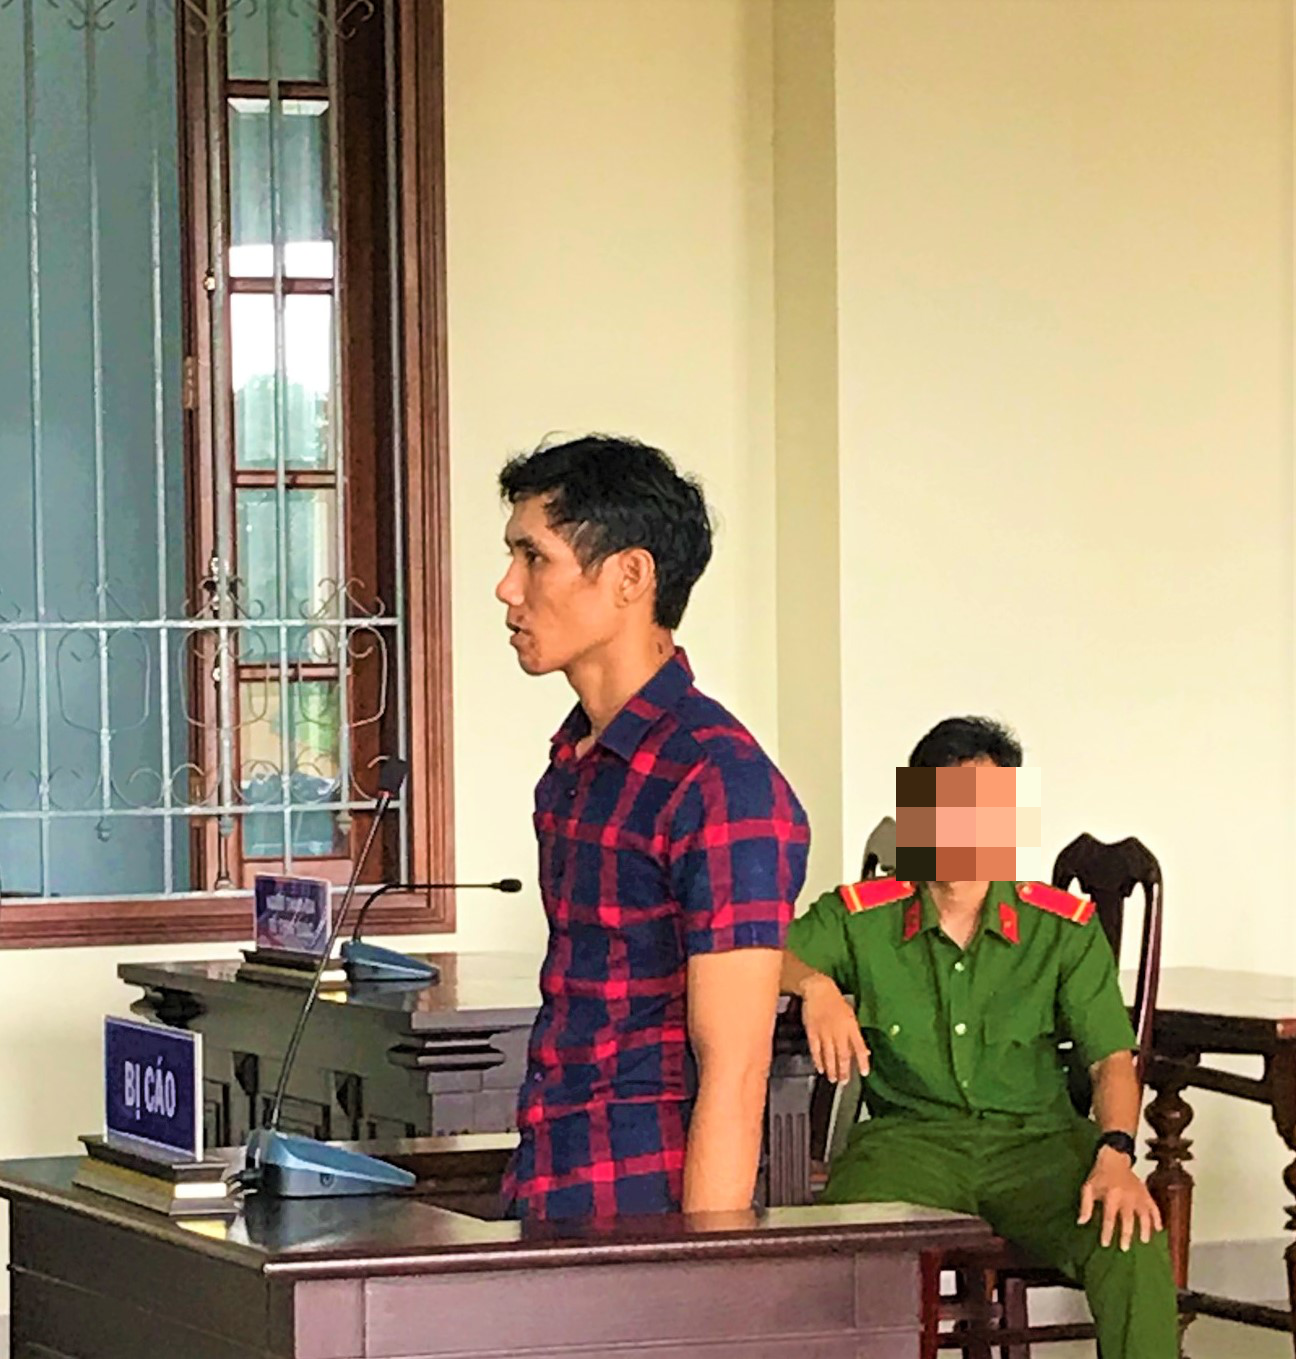 Mâu thuẩn trong quá trình nạp điểm chơi game, bị cáo Nguyễn Văn Thọ đã dùng cây xẻng đập màn hình máy chơi game gây hư hỏng tài sản, bị tòa án tuyên phạt 1 năm tù giam về tội cố ý gây hư hỏng tài sản. Ảnh: Thành Nhân